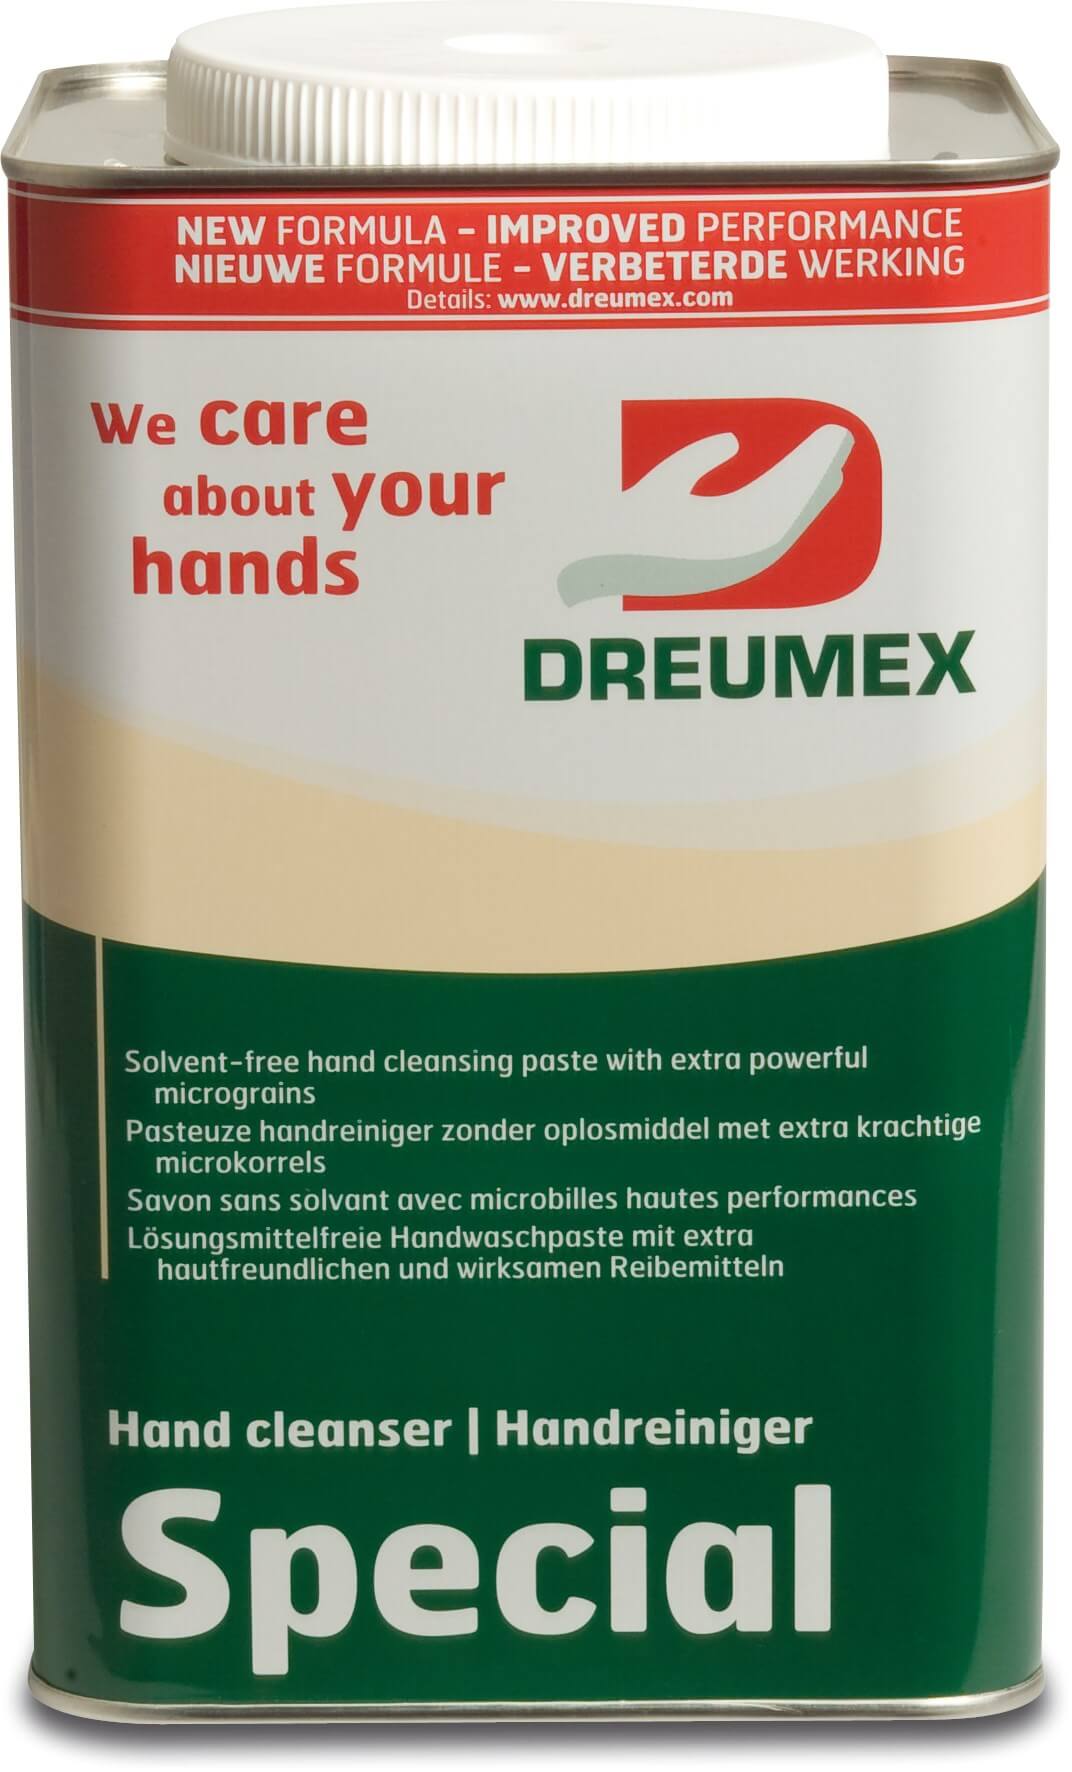 Dreumex Środek do czyszczenia rąk kremowy type Special 4.2 kg